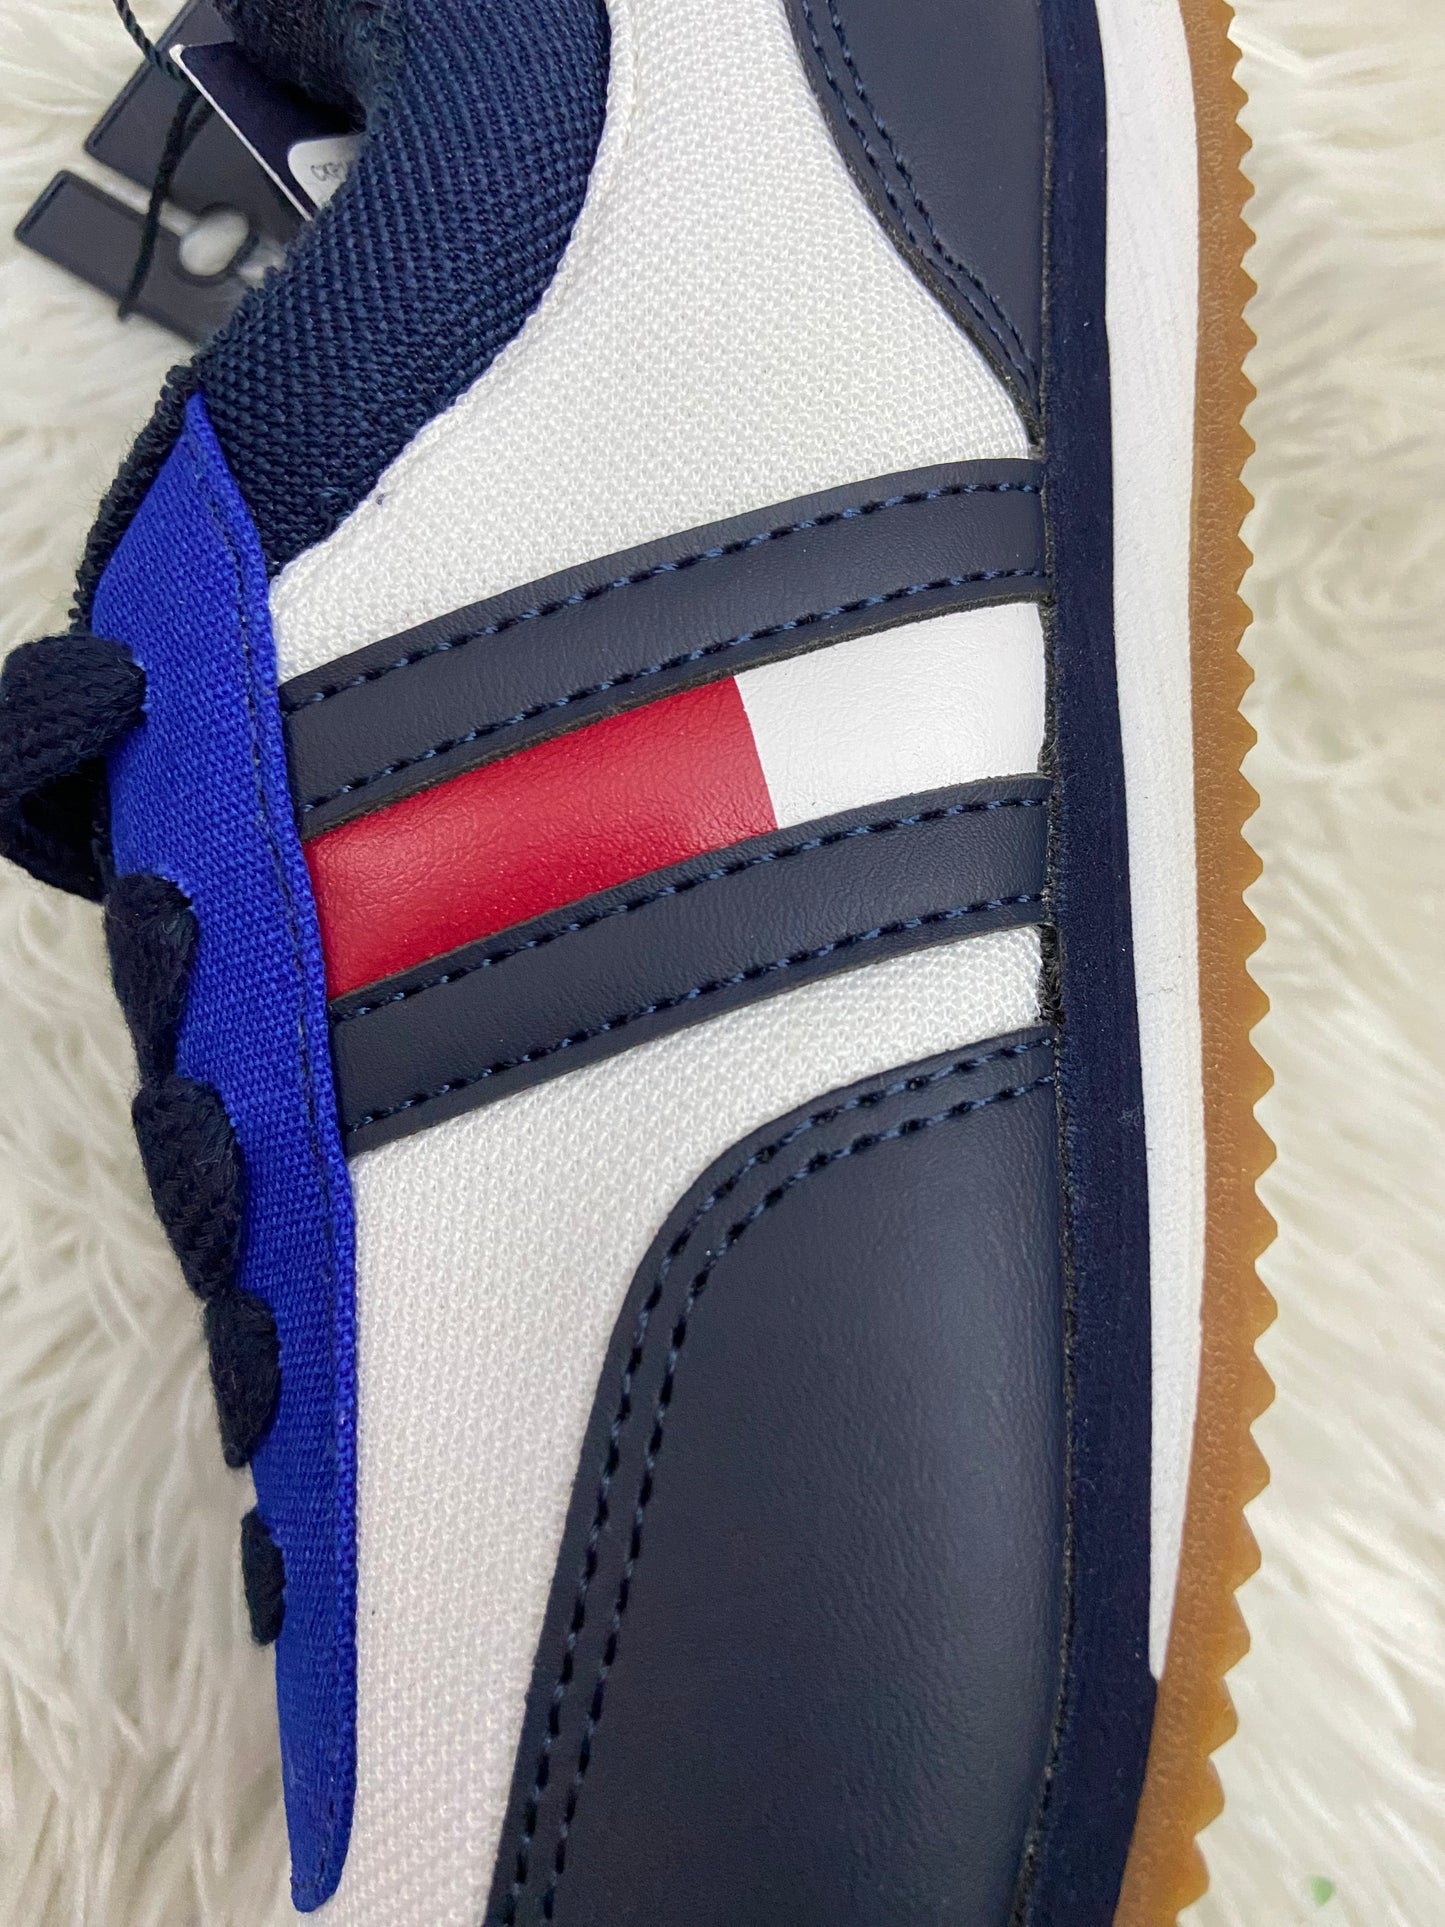 Tenis Tommy Hilfiger original, blanco con bordes azul marino, cordones azul marino, y logotipo de la marca en ambos lados.